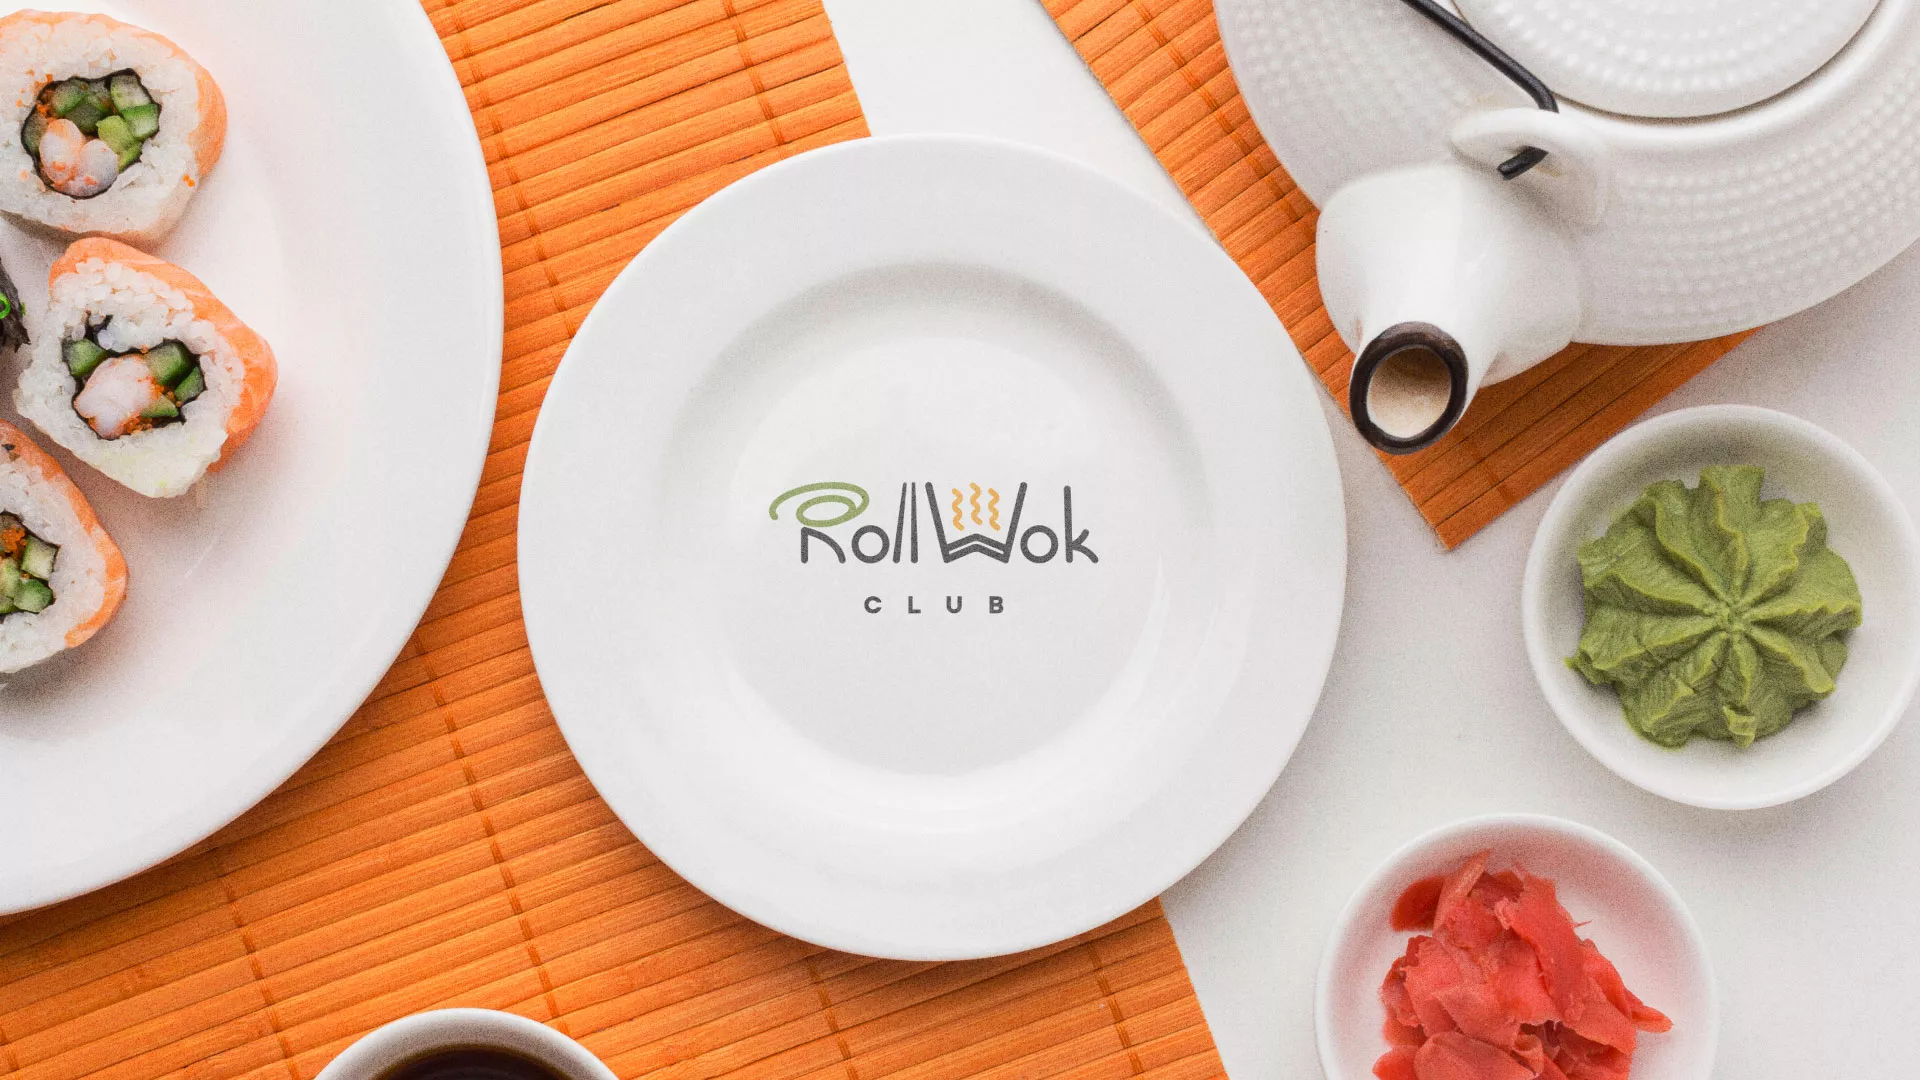 Разработка логотипа и фирменного стиля суши-бара «Roll Wok Club» в Подпорожье